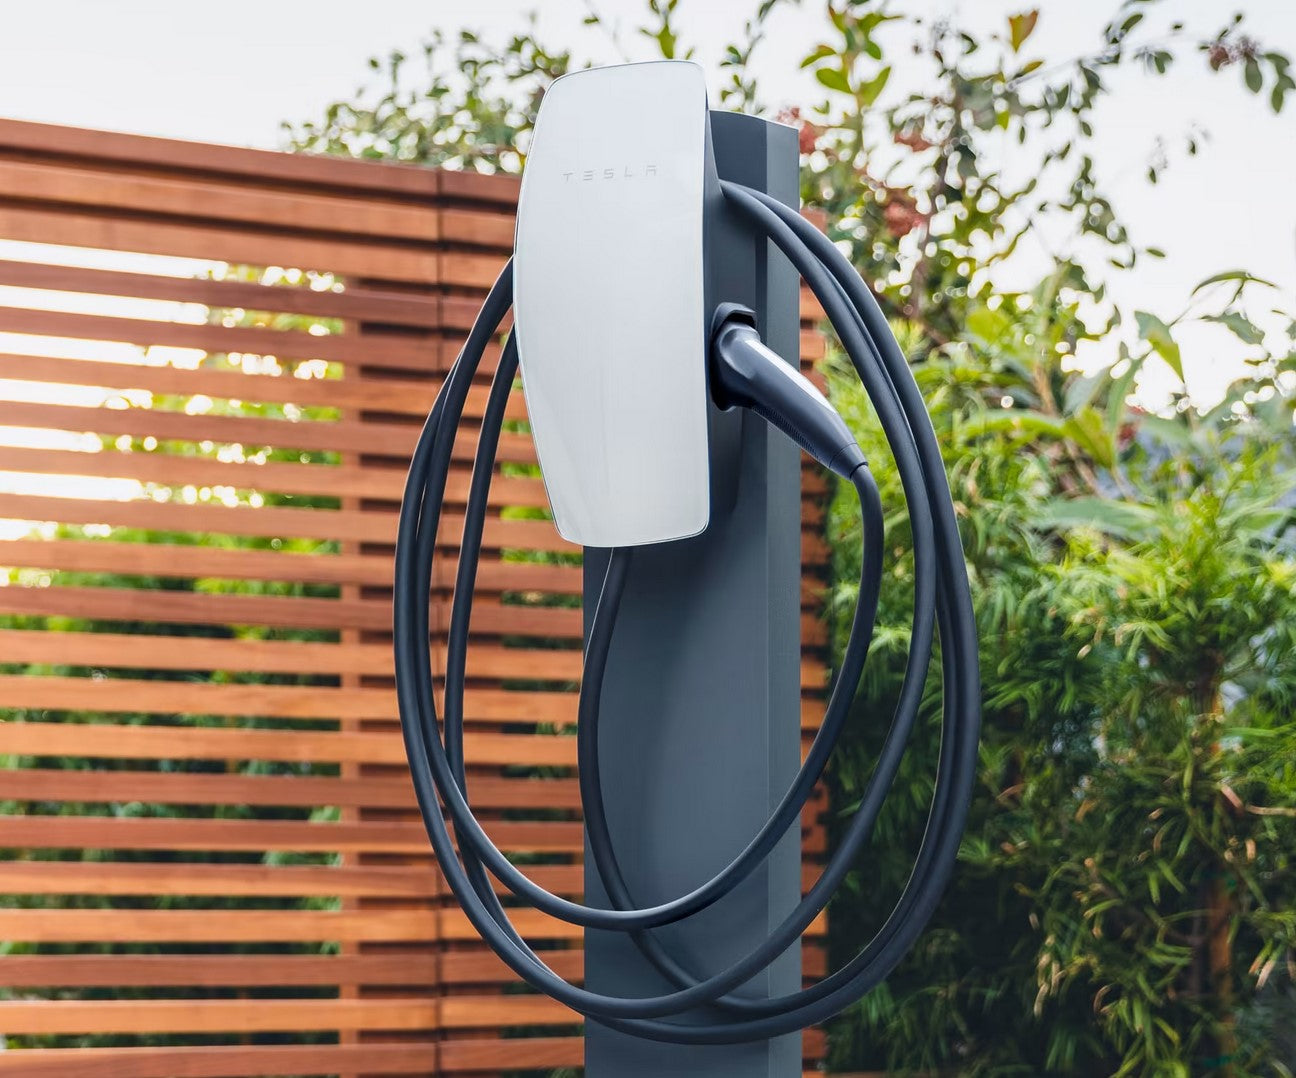 Telsa gen 3 wall connector mounted on  pedestal  outdoors